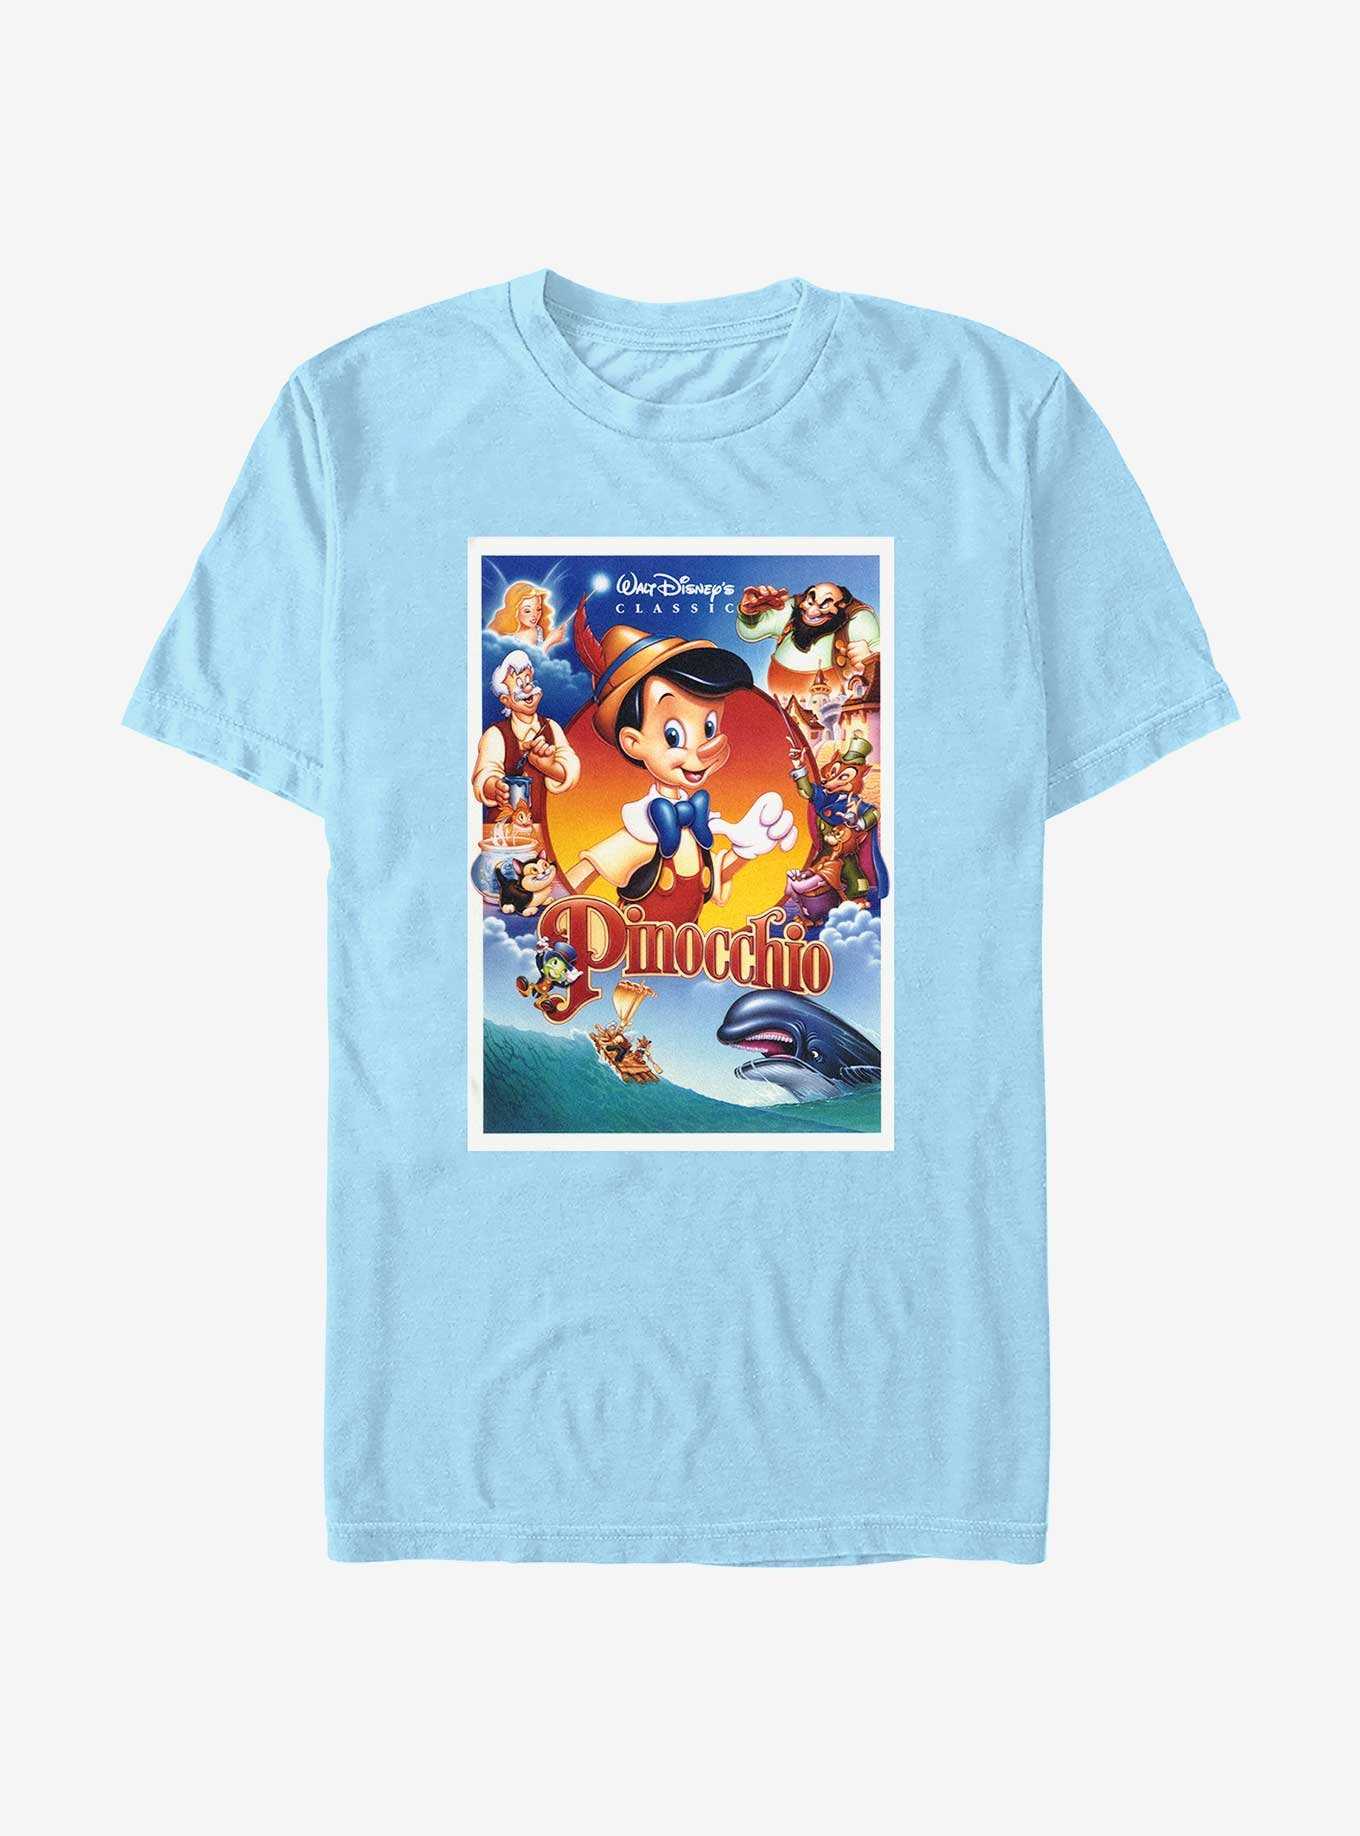 Disney Pinocchio Classic Movie Cover T-Shirt, , hi-res